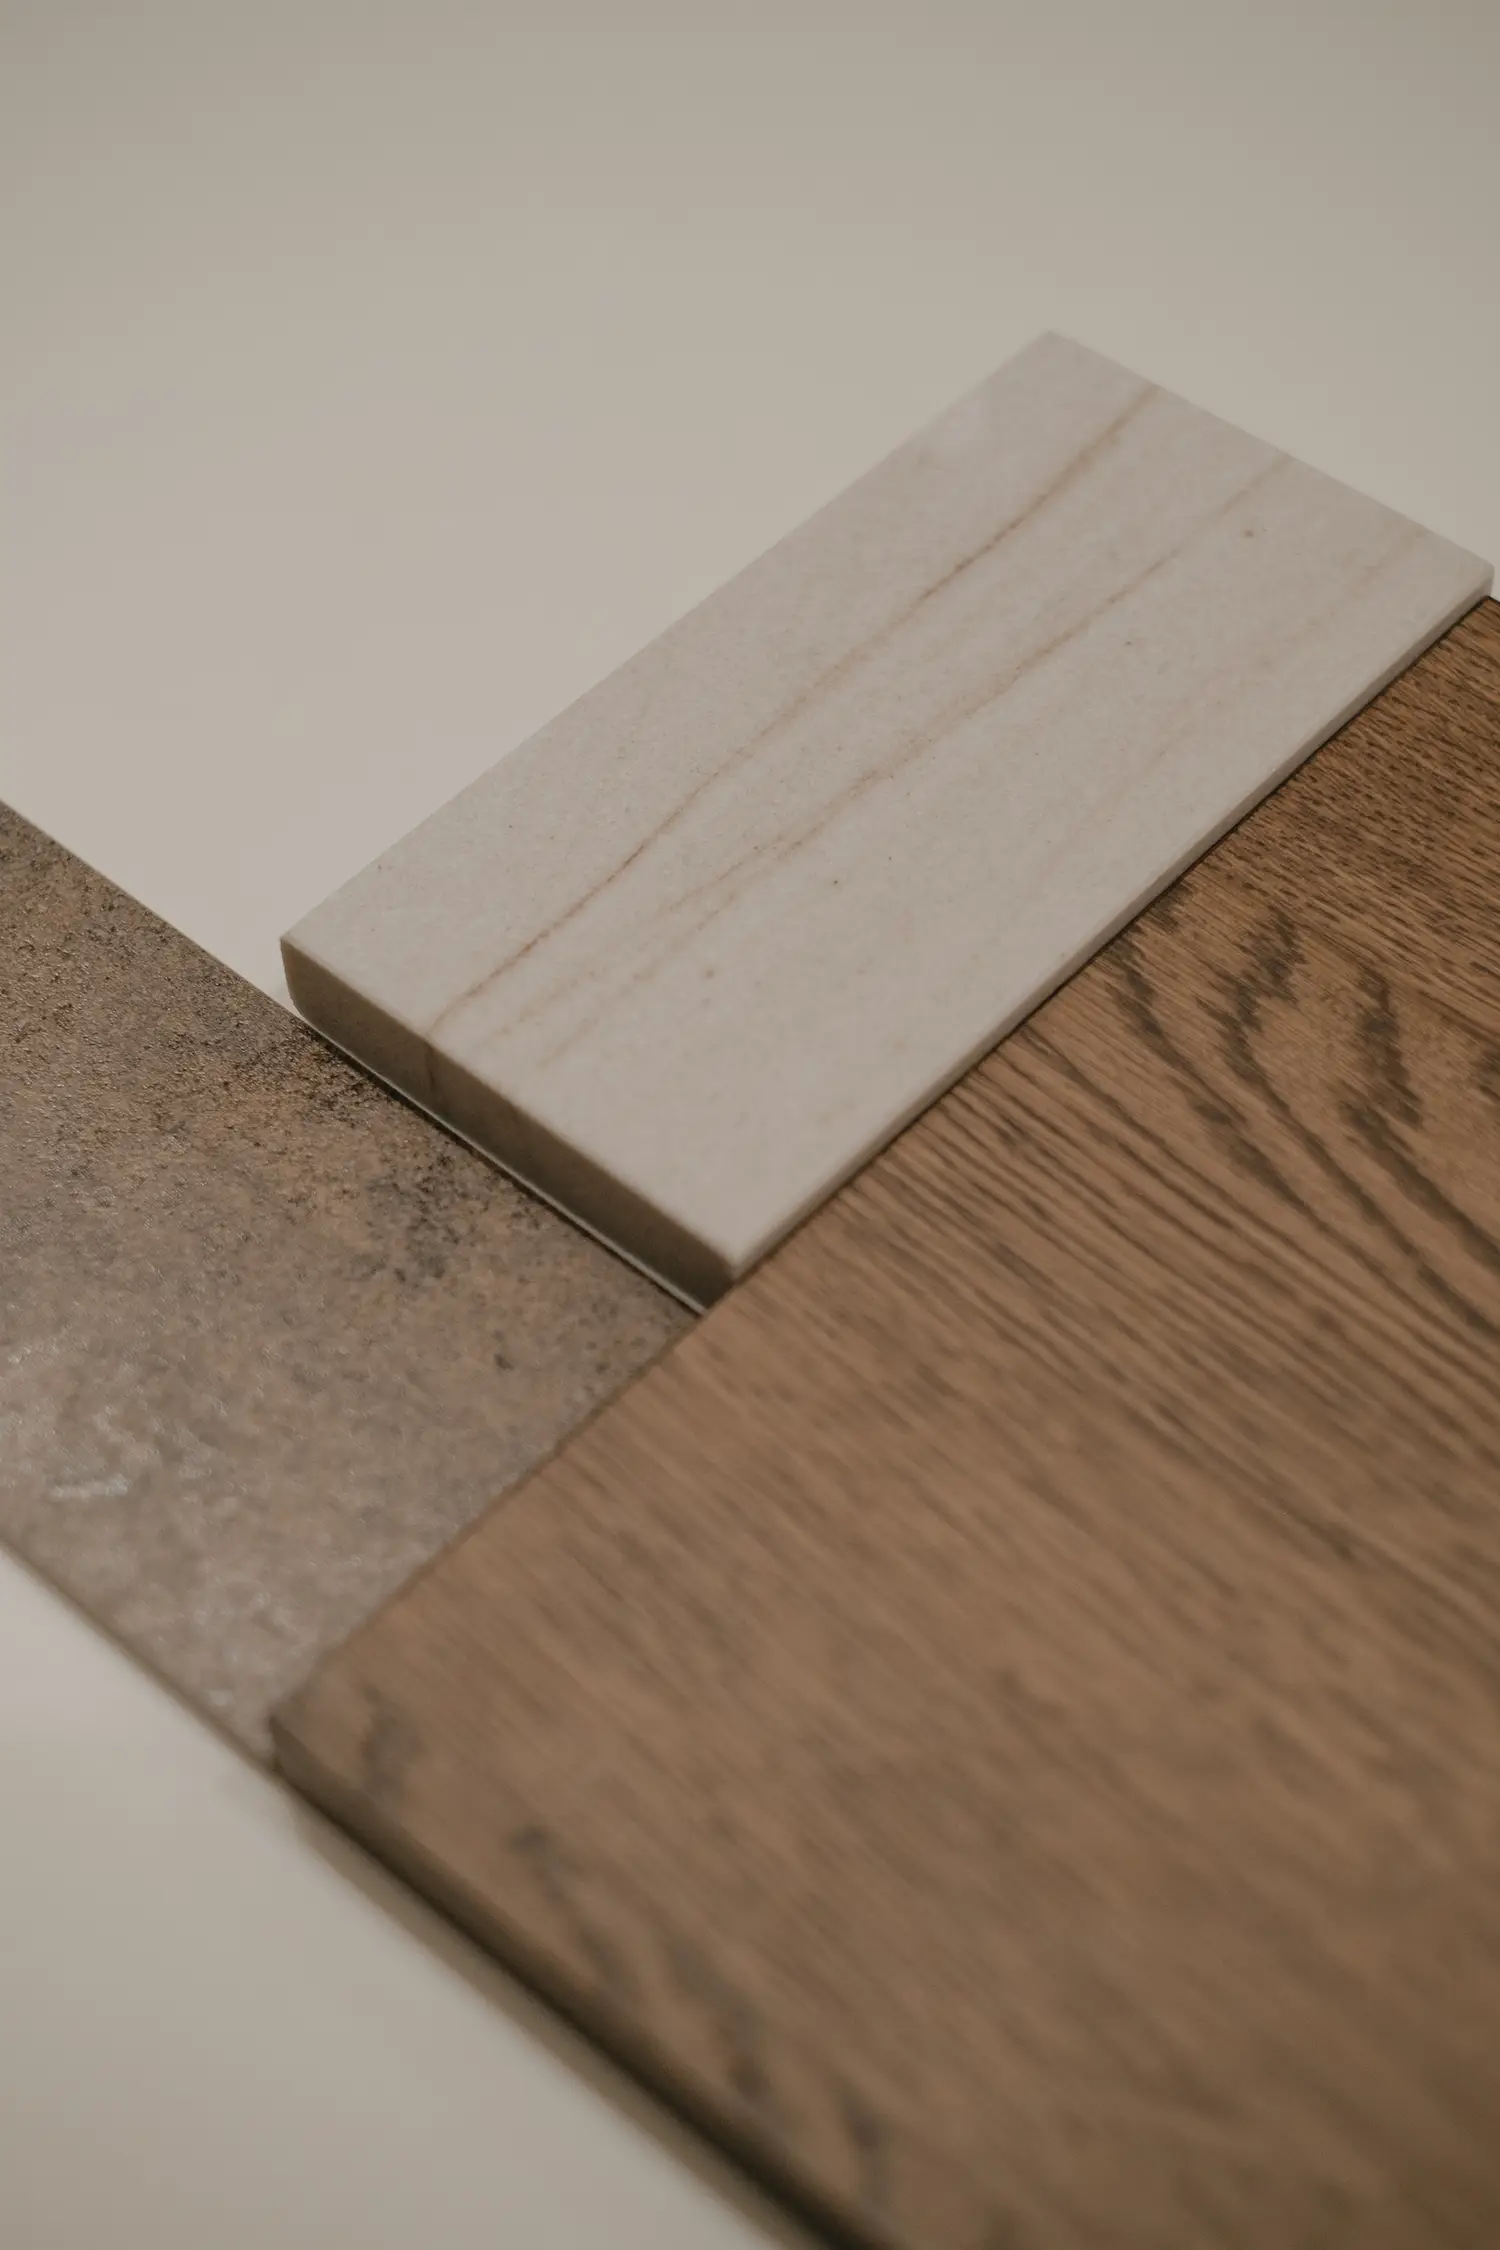 Combinaison d'échantillons de bois avec différentes finitions dans la construction d'un moodboard par le studio Elles Interior Design.